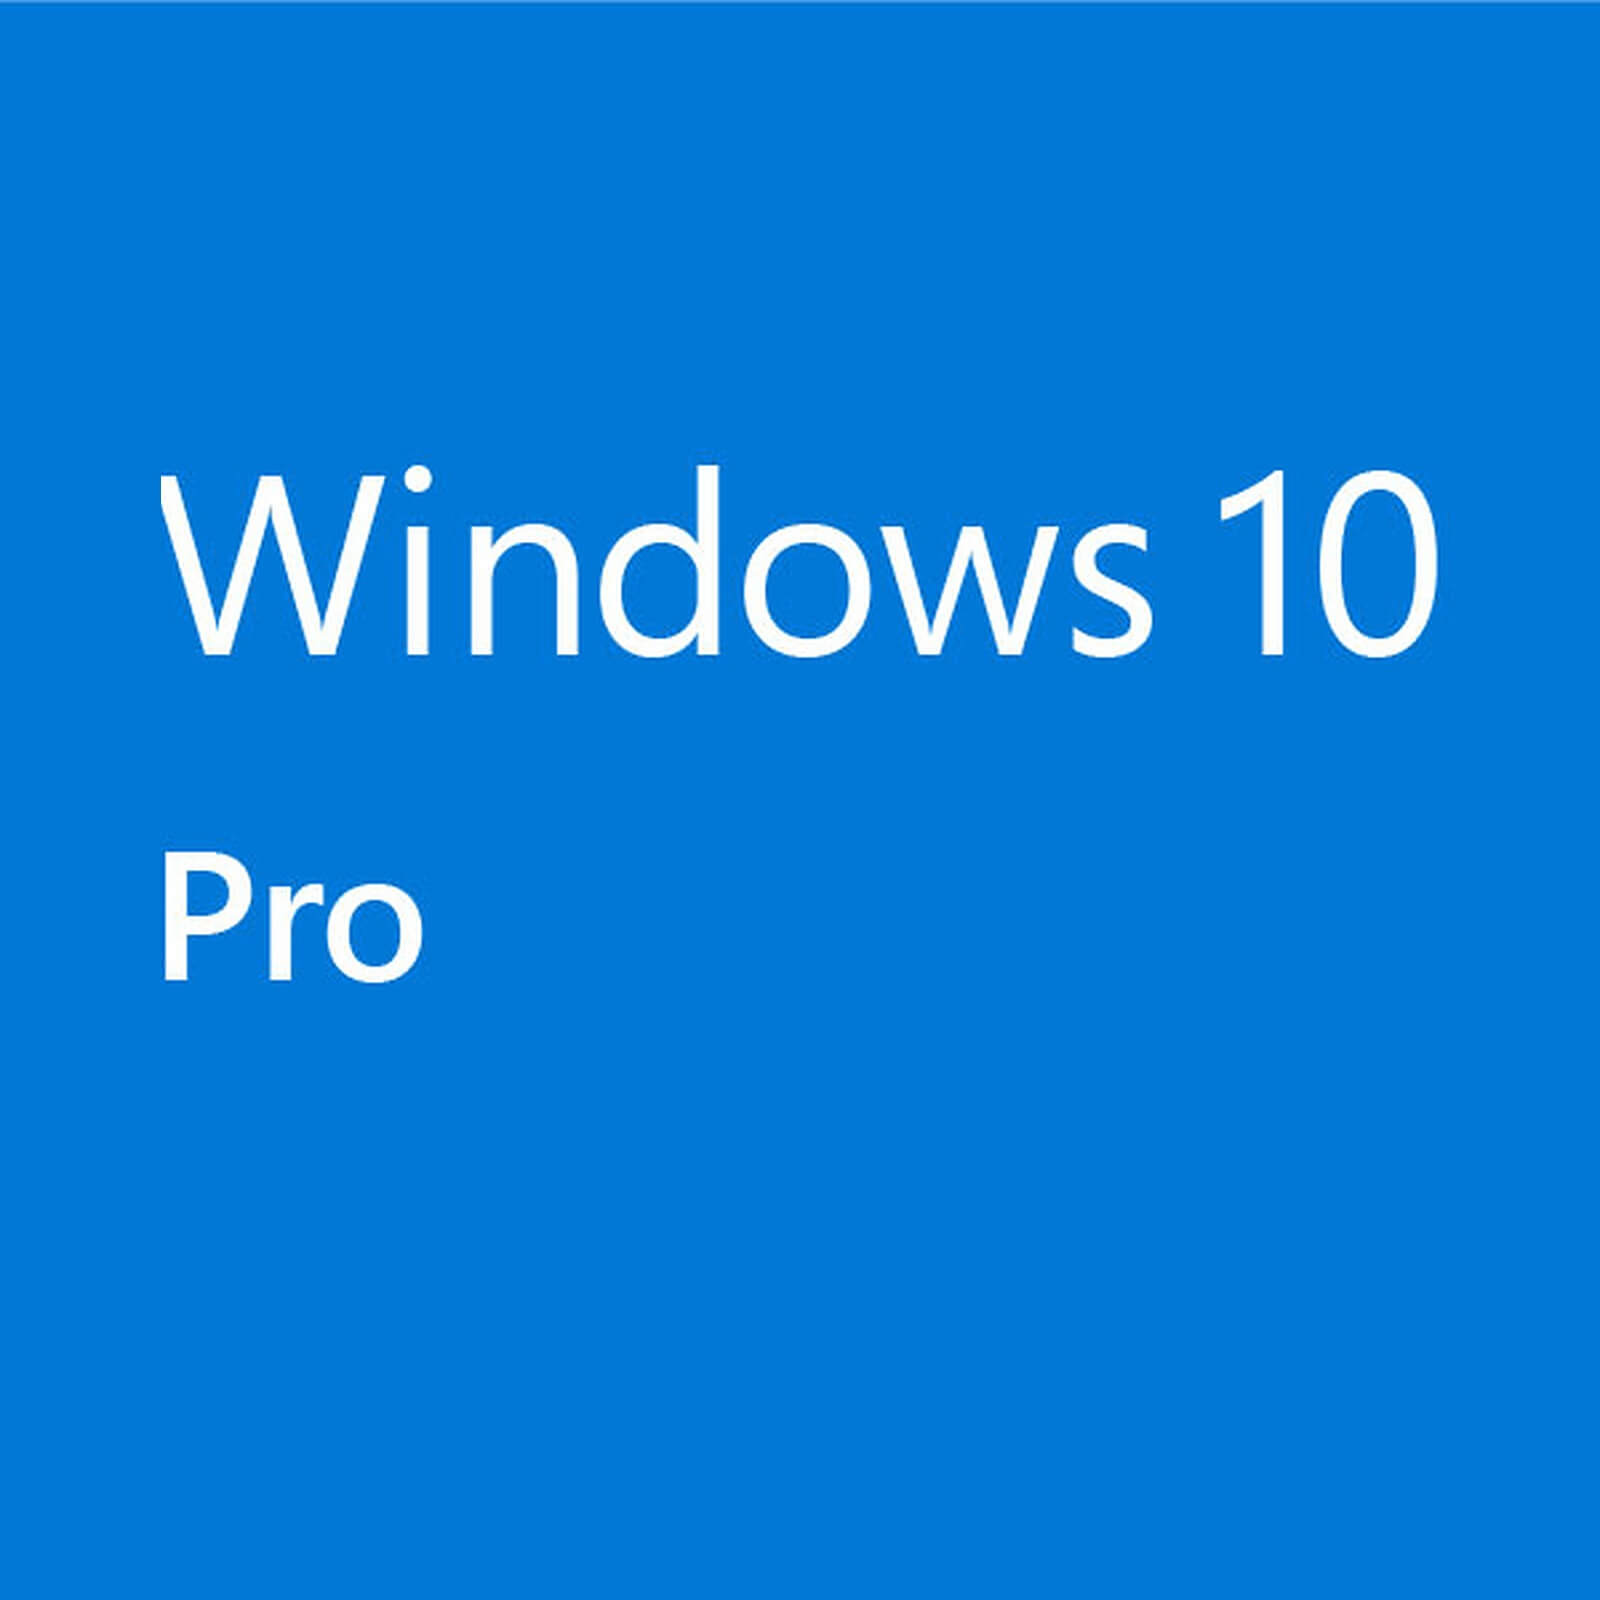 download windows 10 pro iso 64 bit utorrent